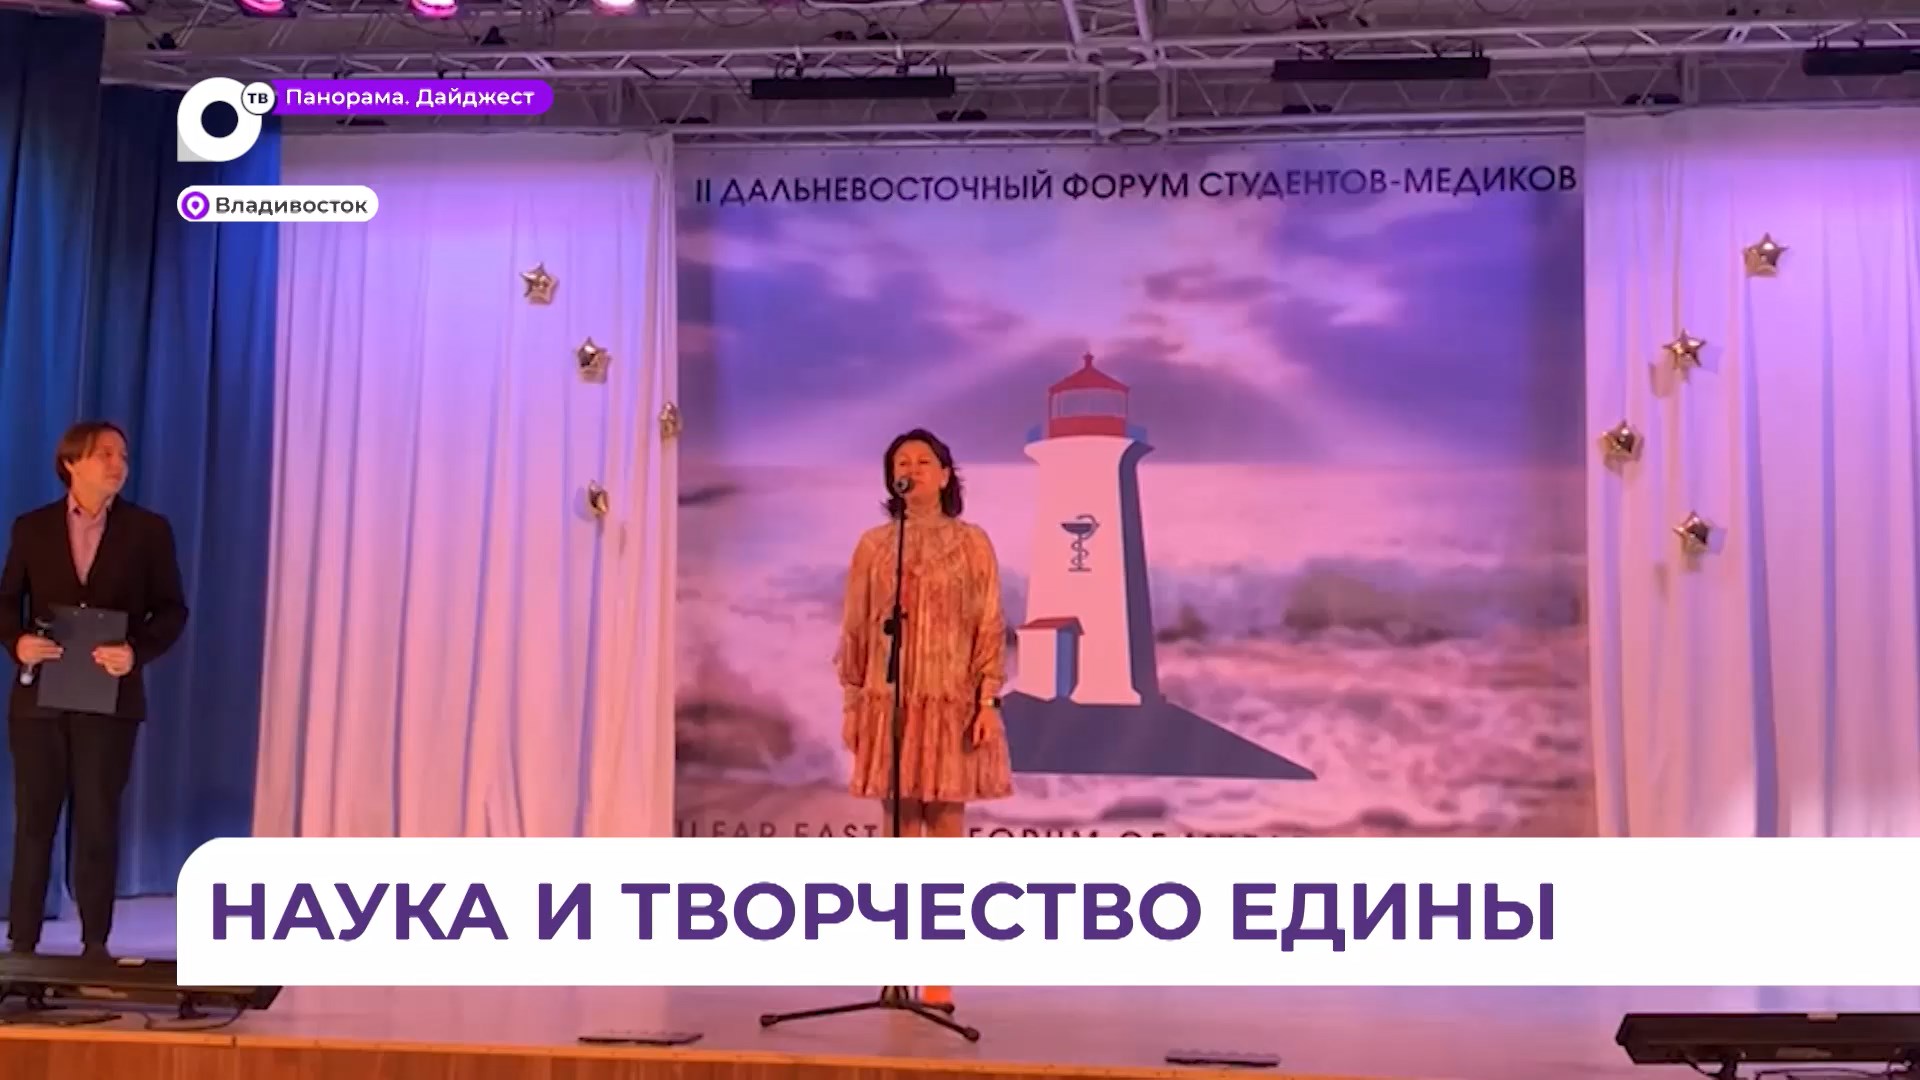 Форум студентов-медиков объединил учащихся из Владивостока, Иркутска, Благовещенска и Хабаровска